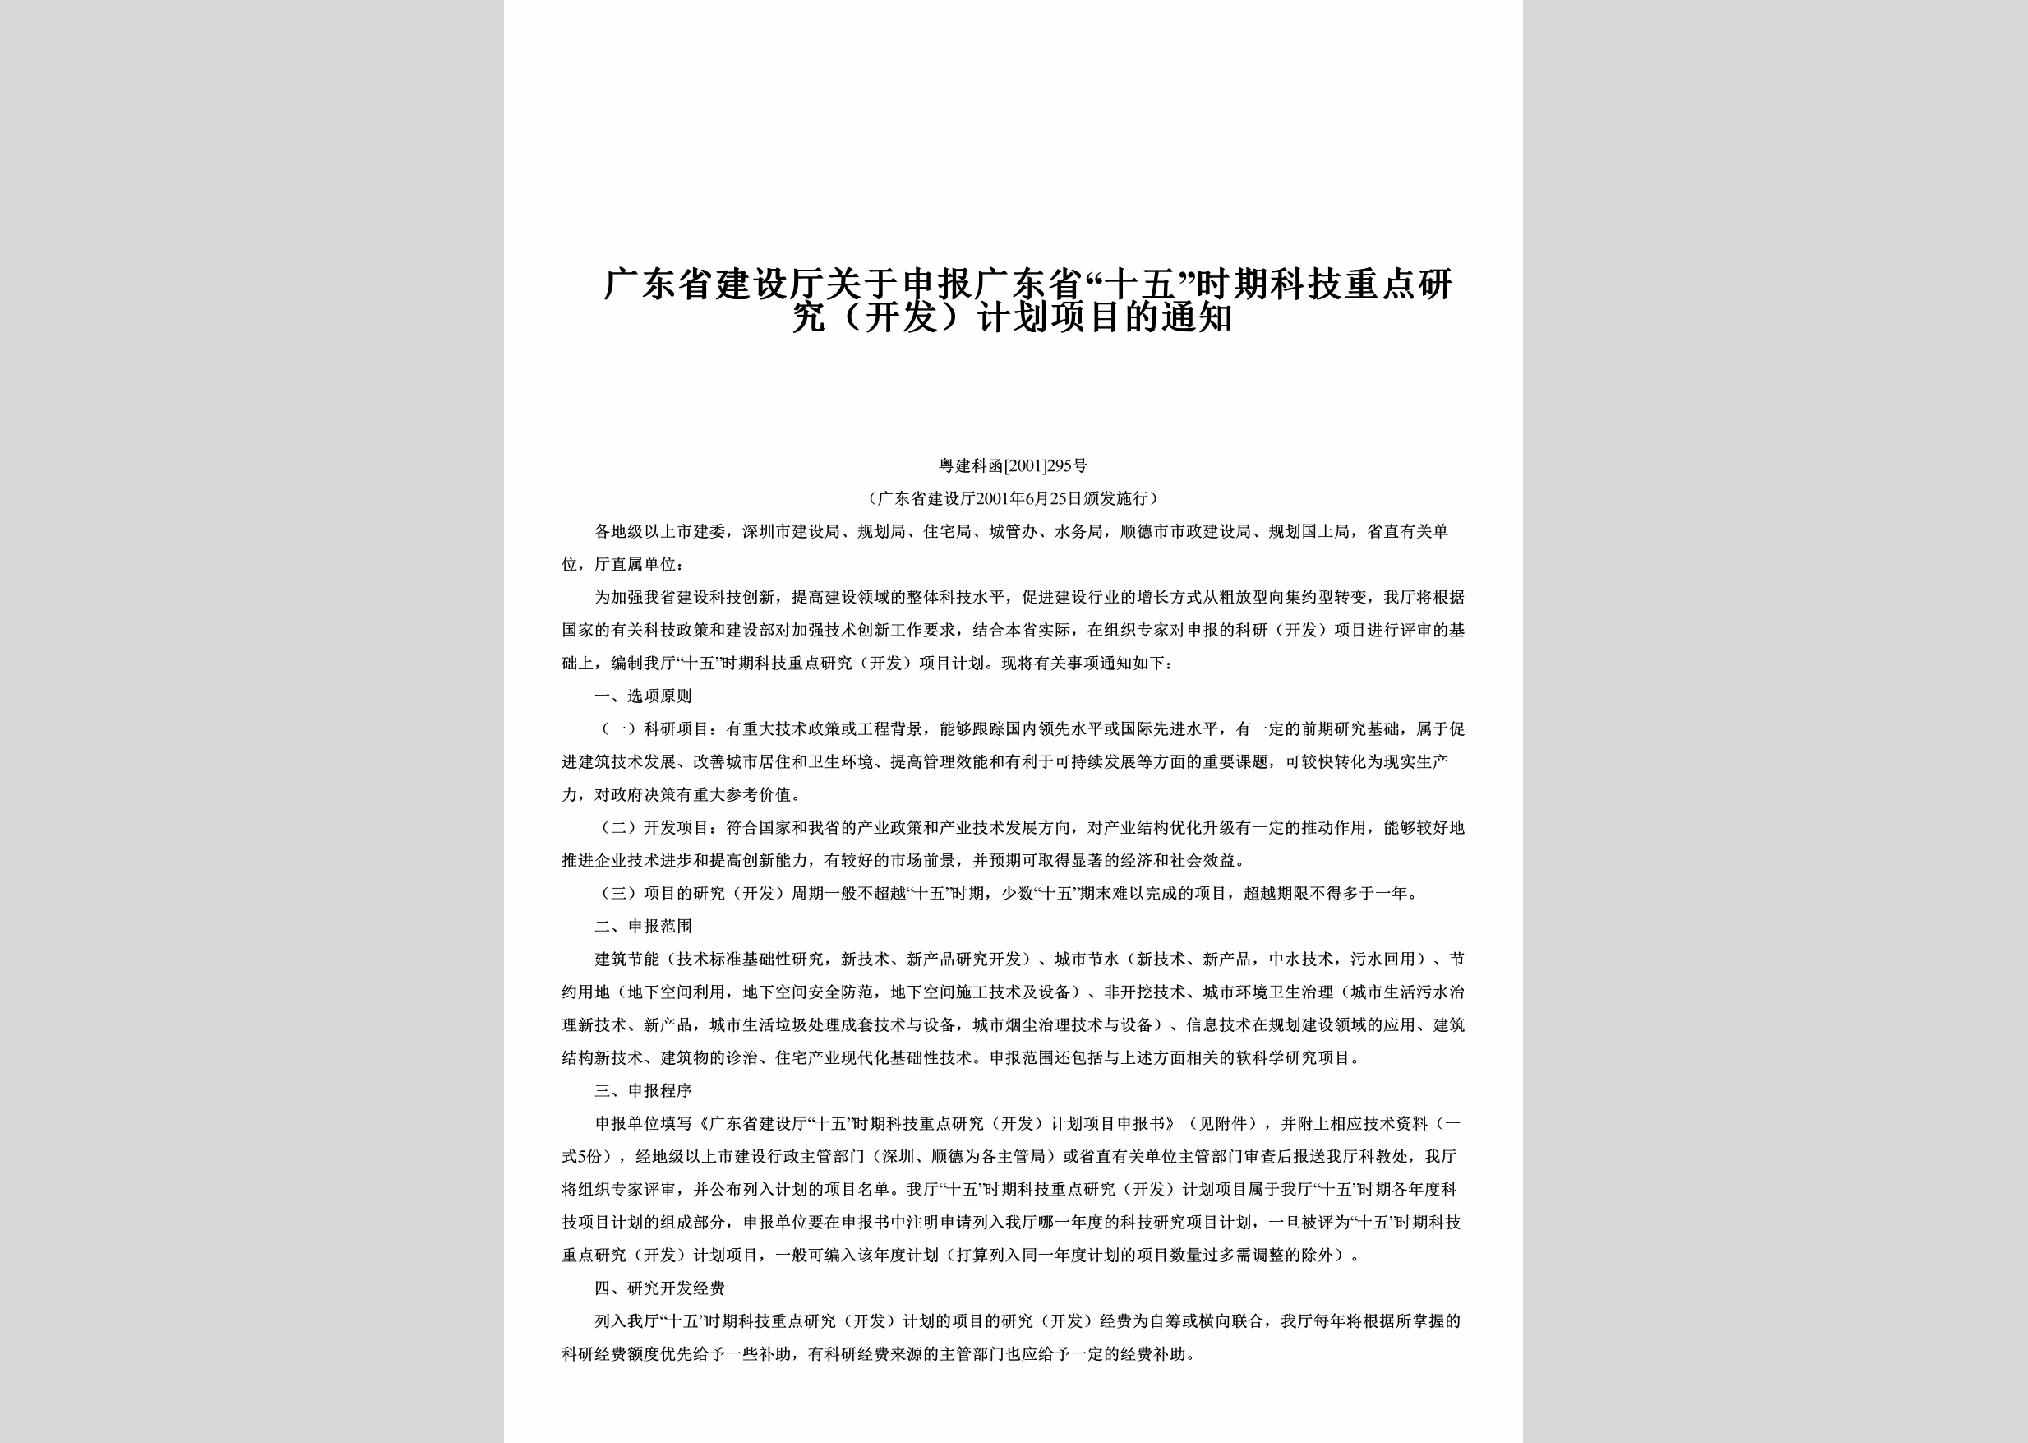 粤建科函[2001]295号：关于申报广东省“十五”时期科技重点研究（开发）计划项目的通知